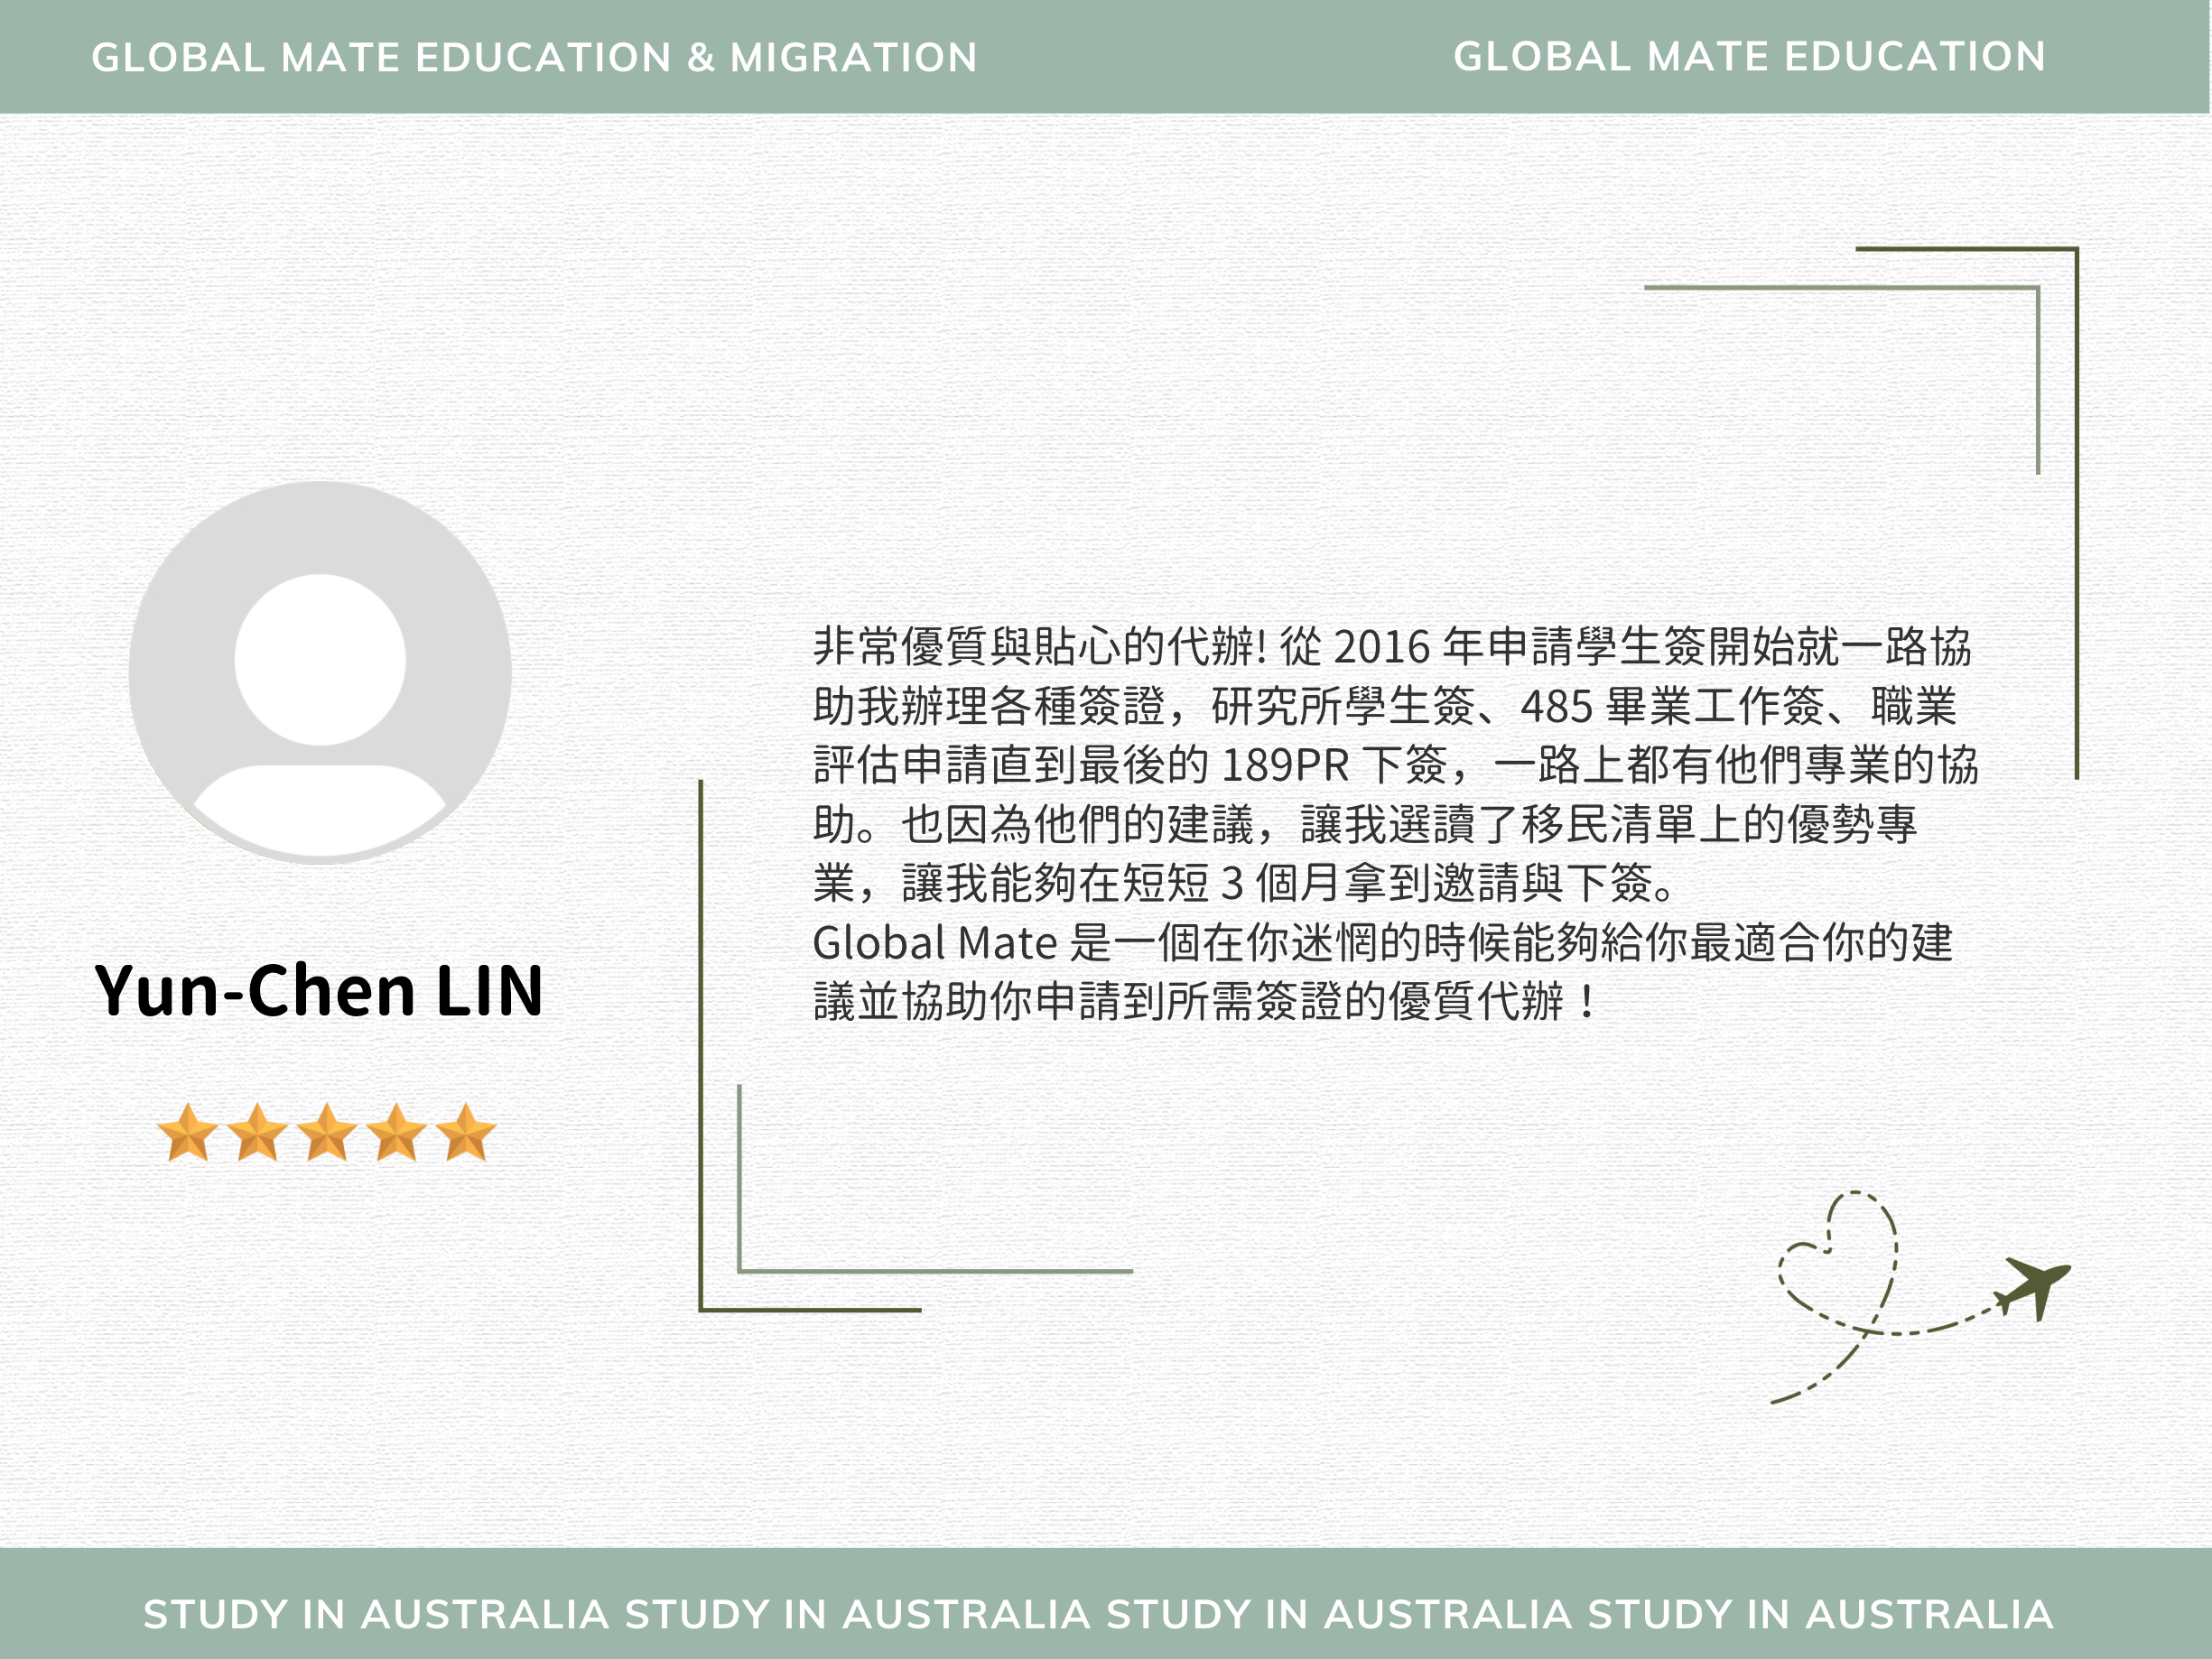 Yun-Chen LIN